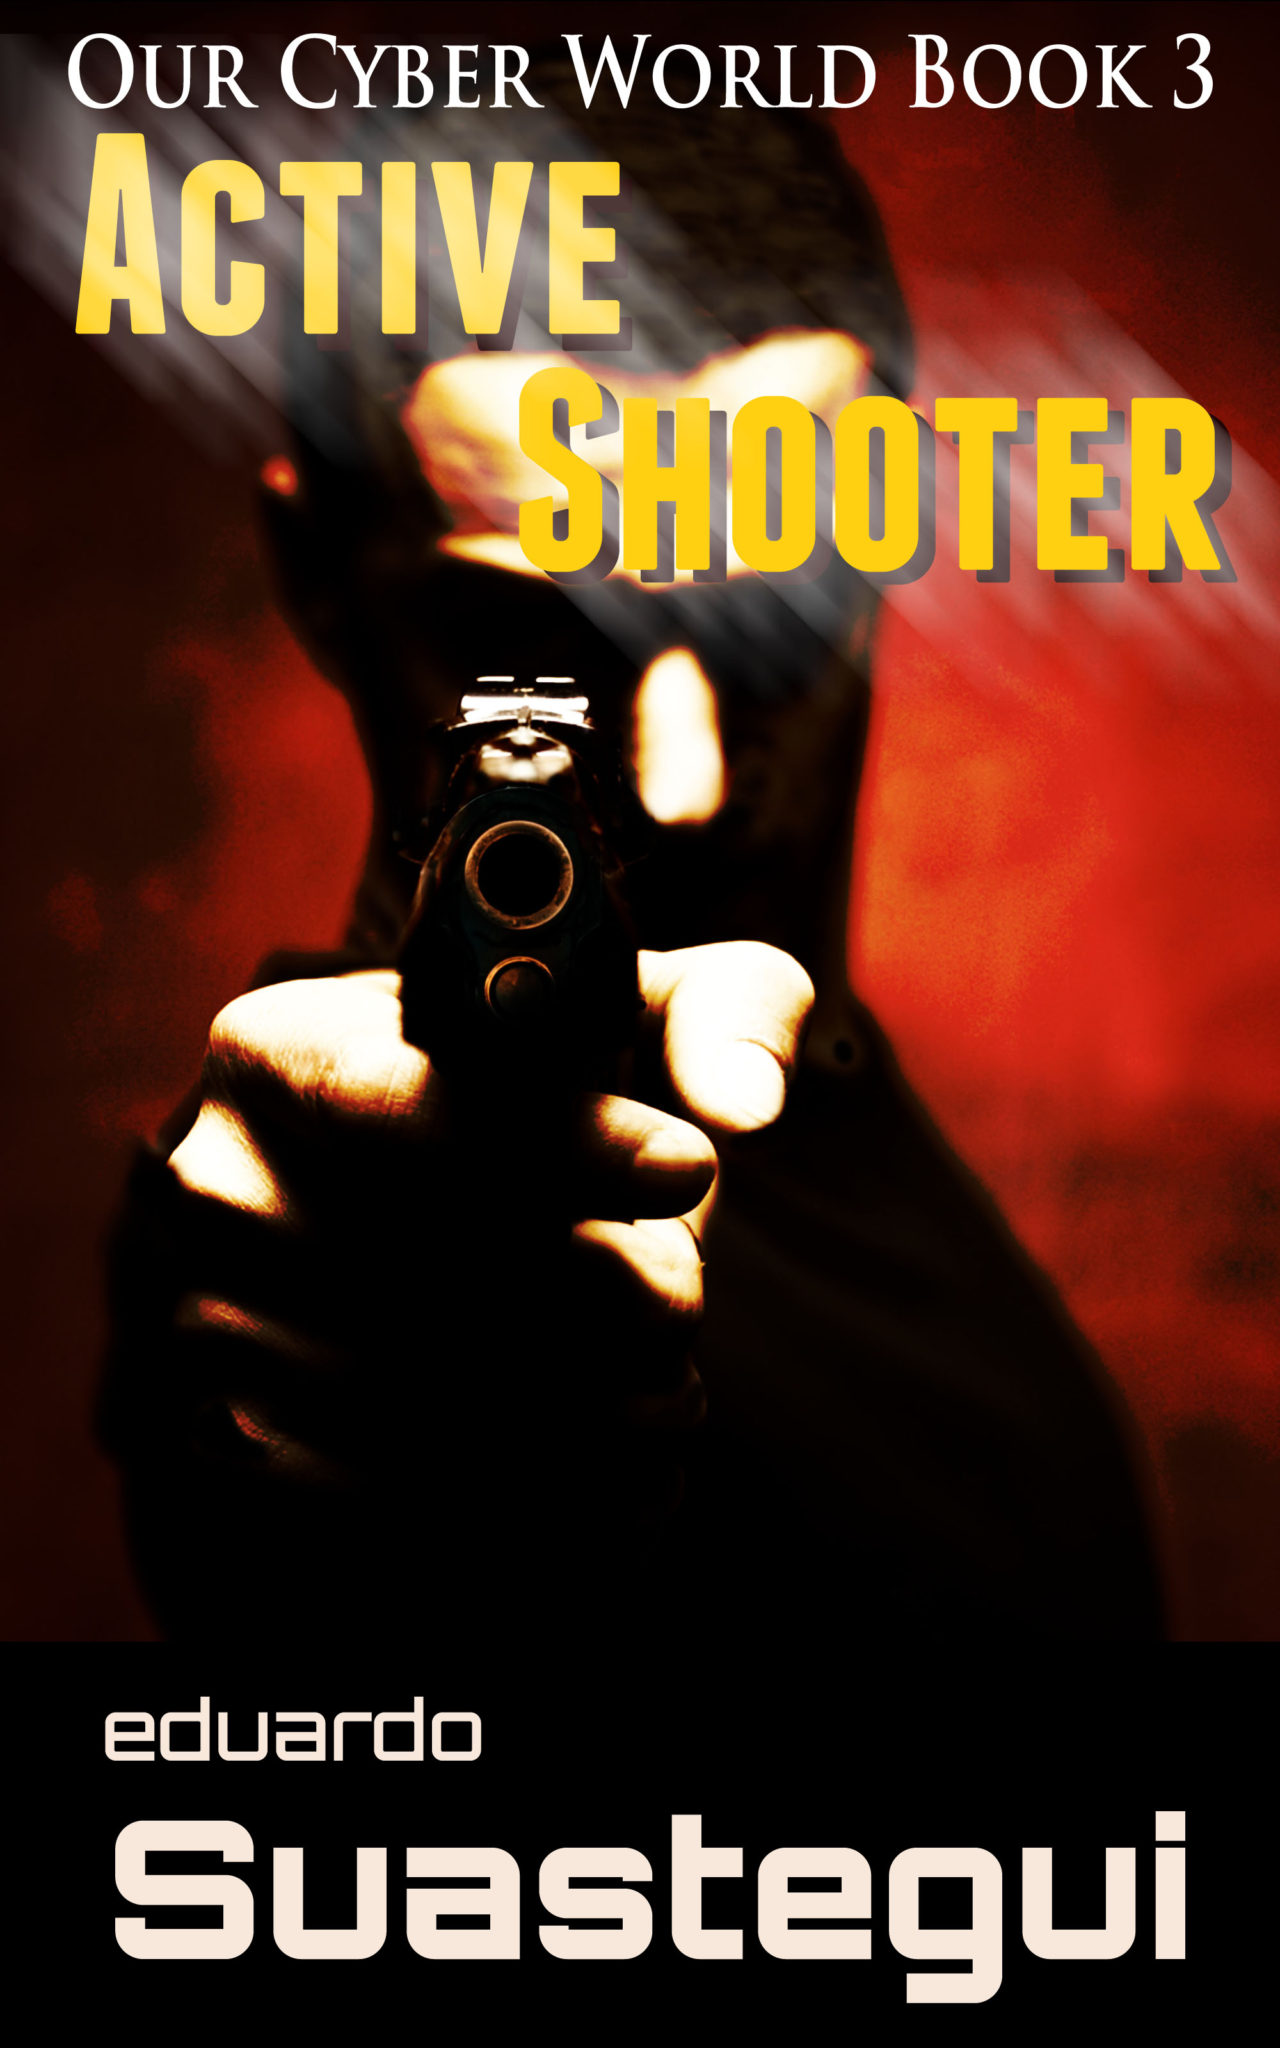 Active Shooter by Eduardo Suastegui